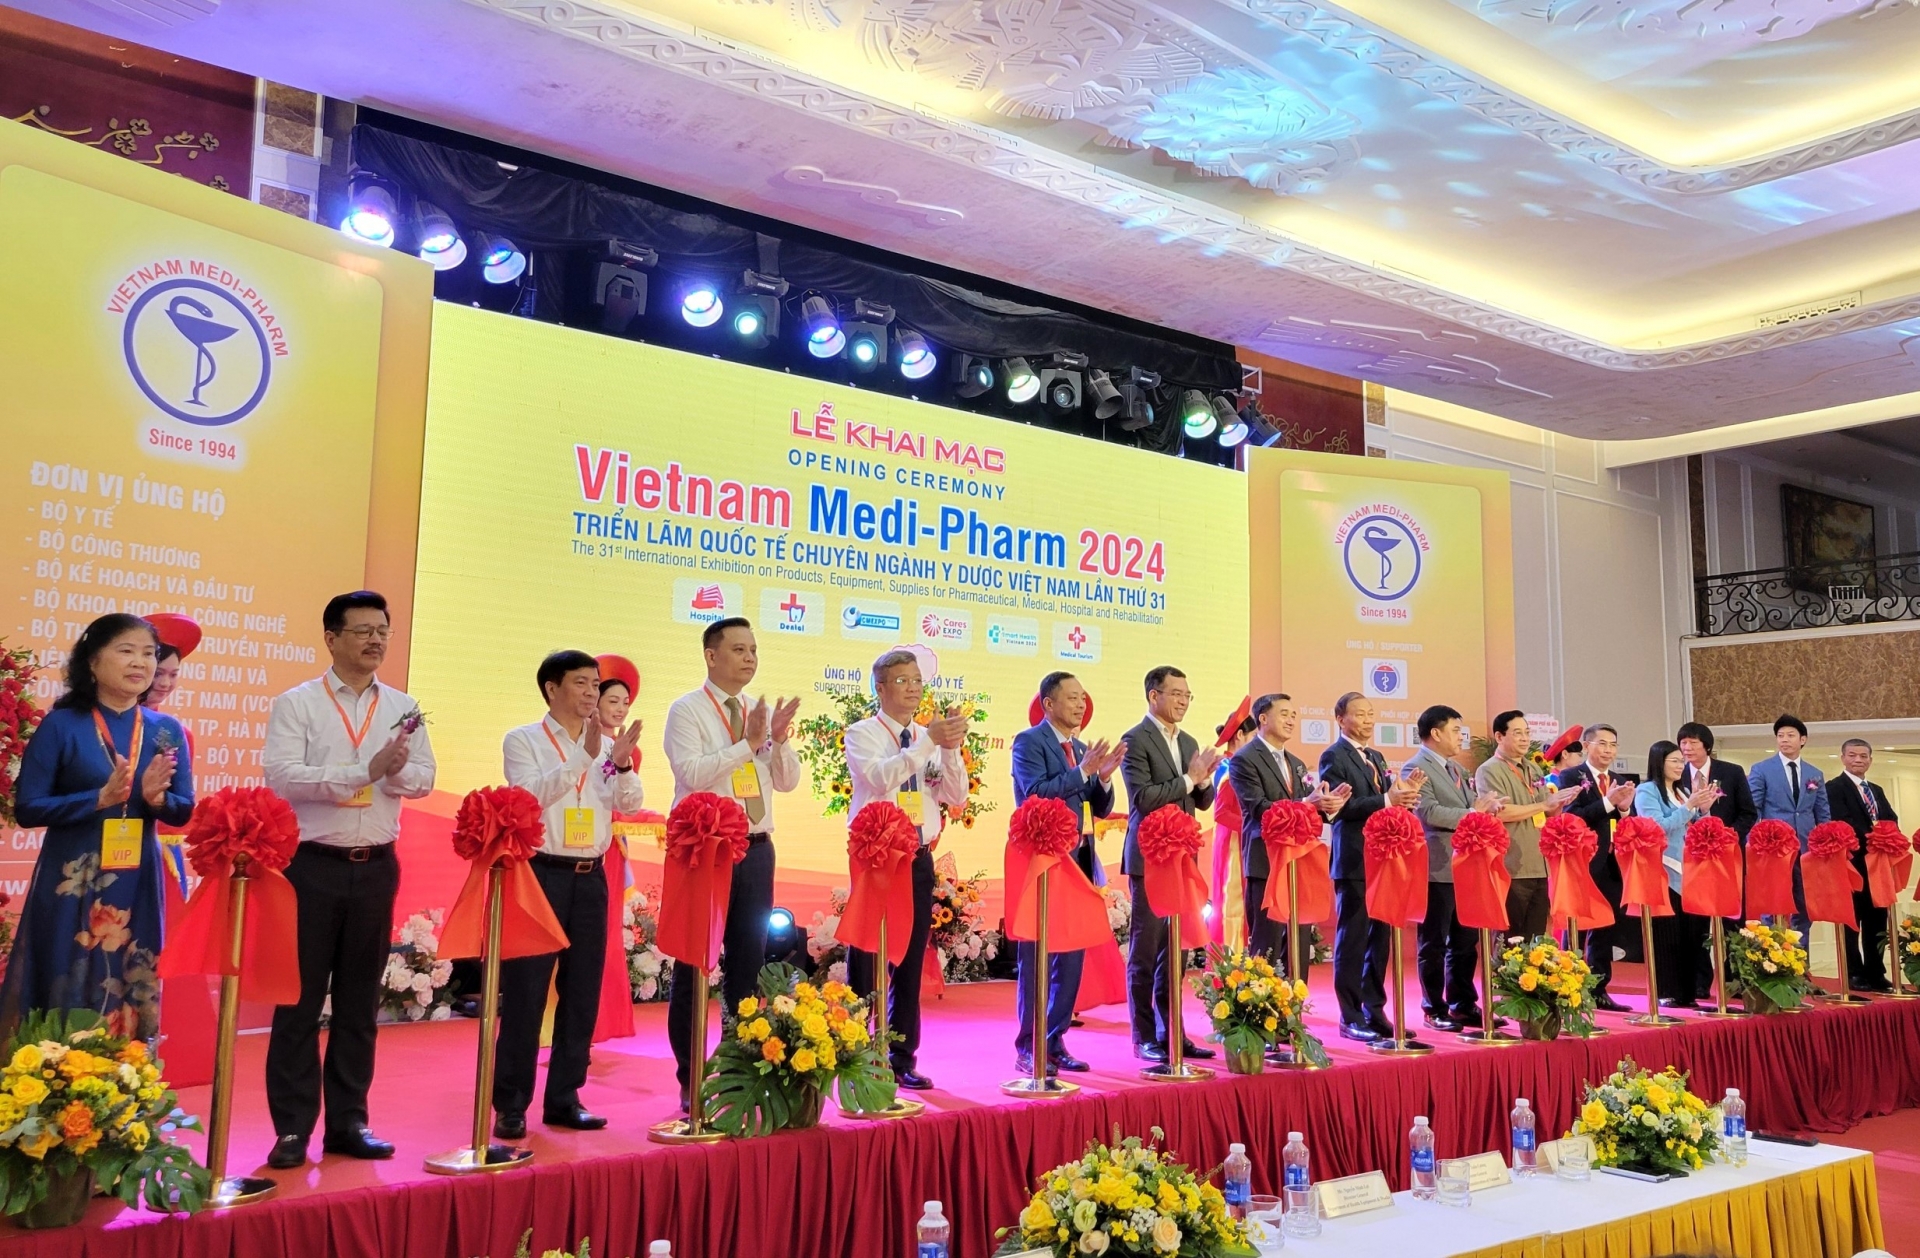 Khai mạc Triển lãm Quốc tế chuyên ngành Y Dược Việt Nam lần thứ 31 tại Hà Nội